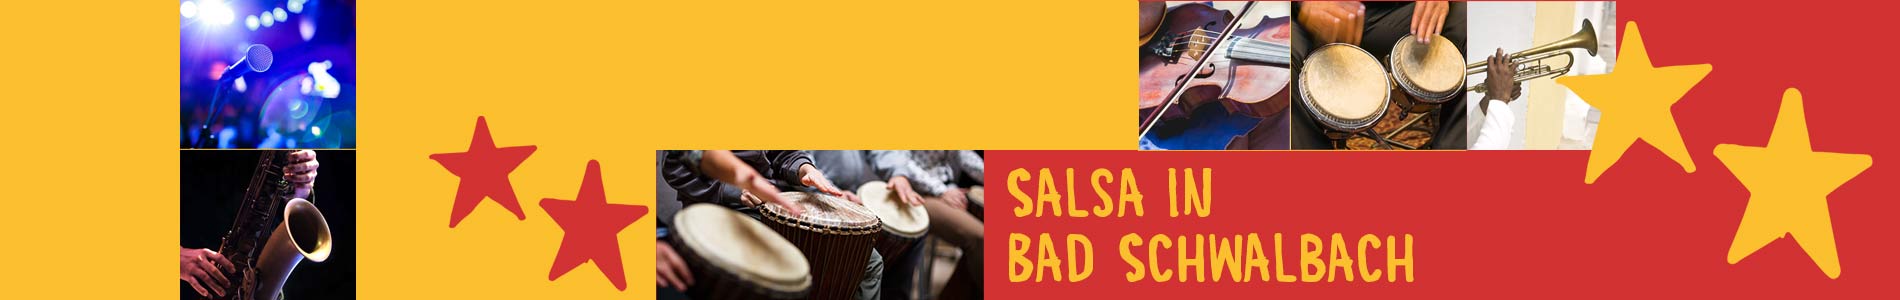 Salsa in Bad Schwalbach – Salsa lernen und tanzen, Tanzkurse, Partys, Veranstaltungen